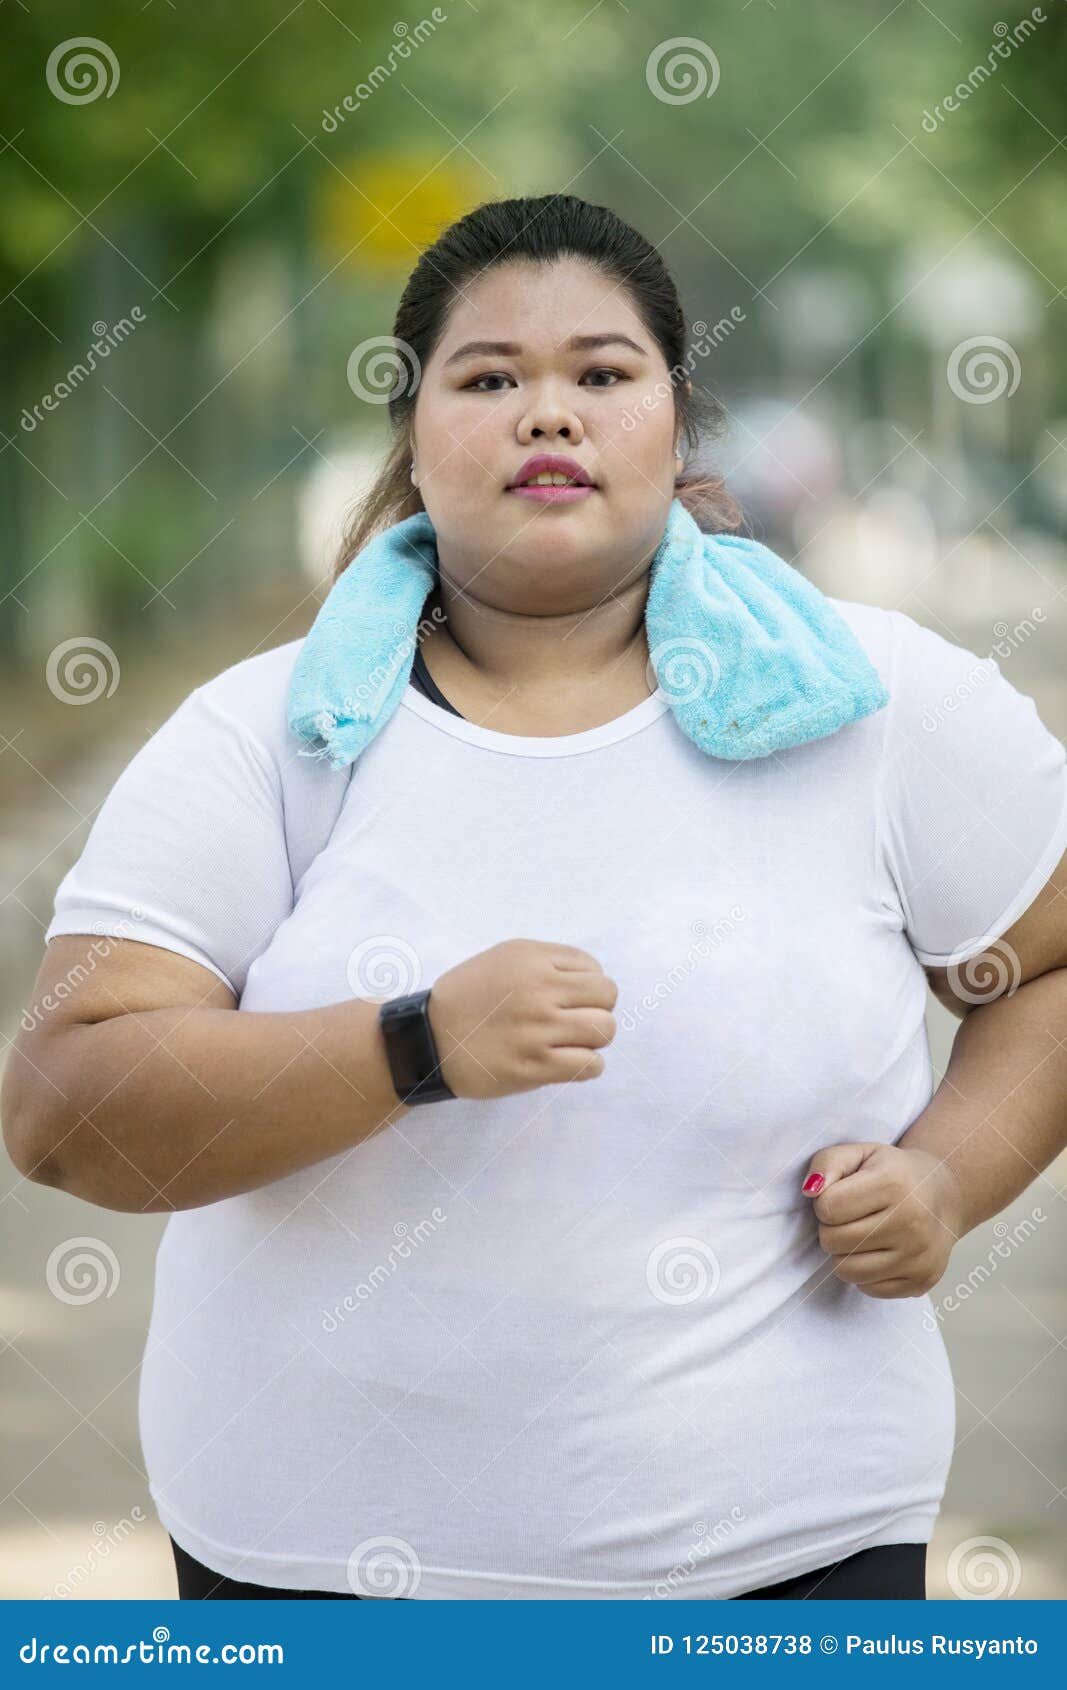 азиатки на фото толстые фото 88